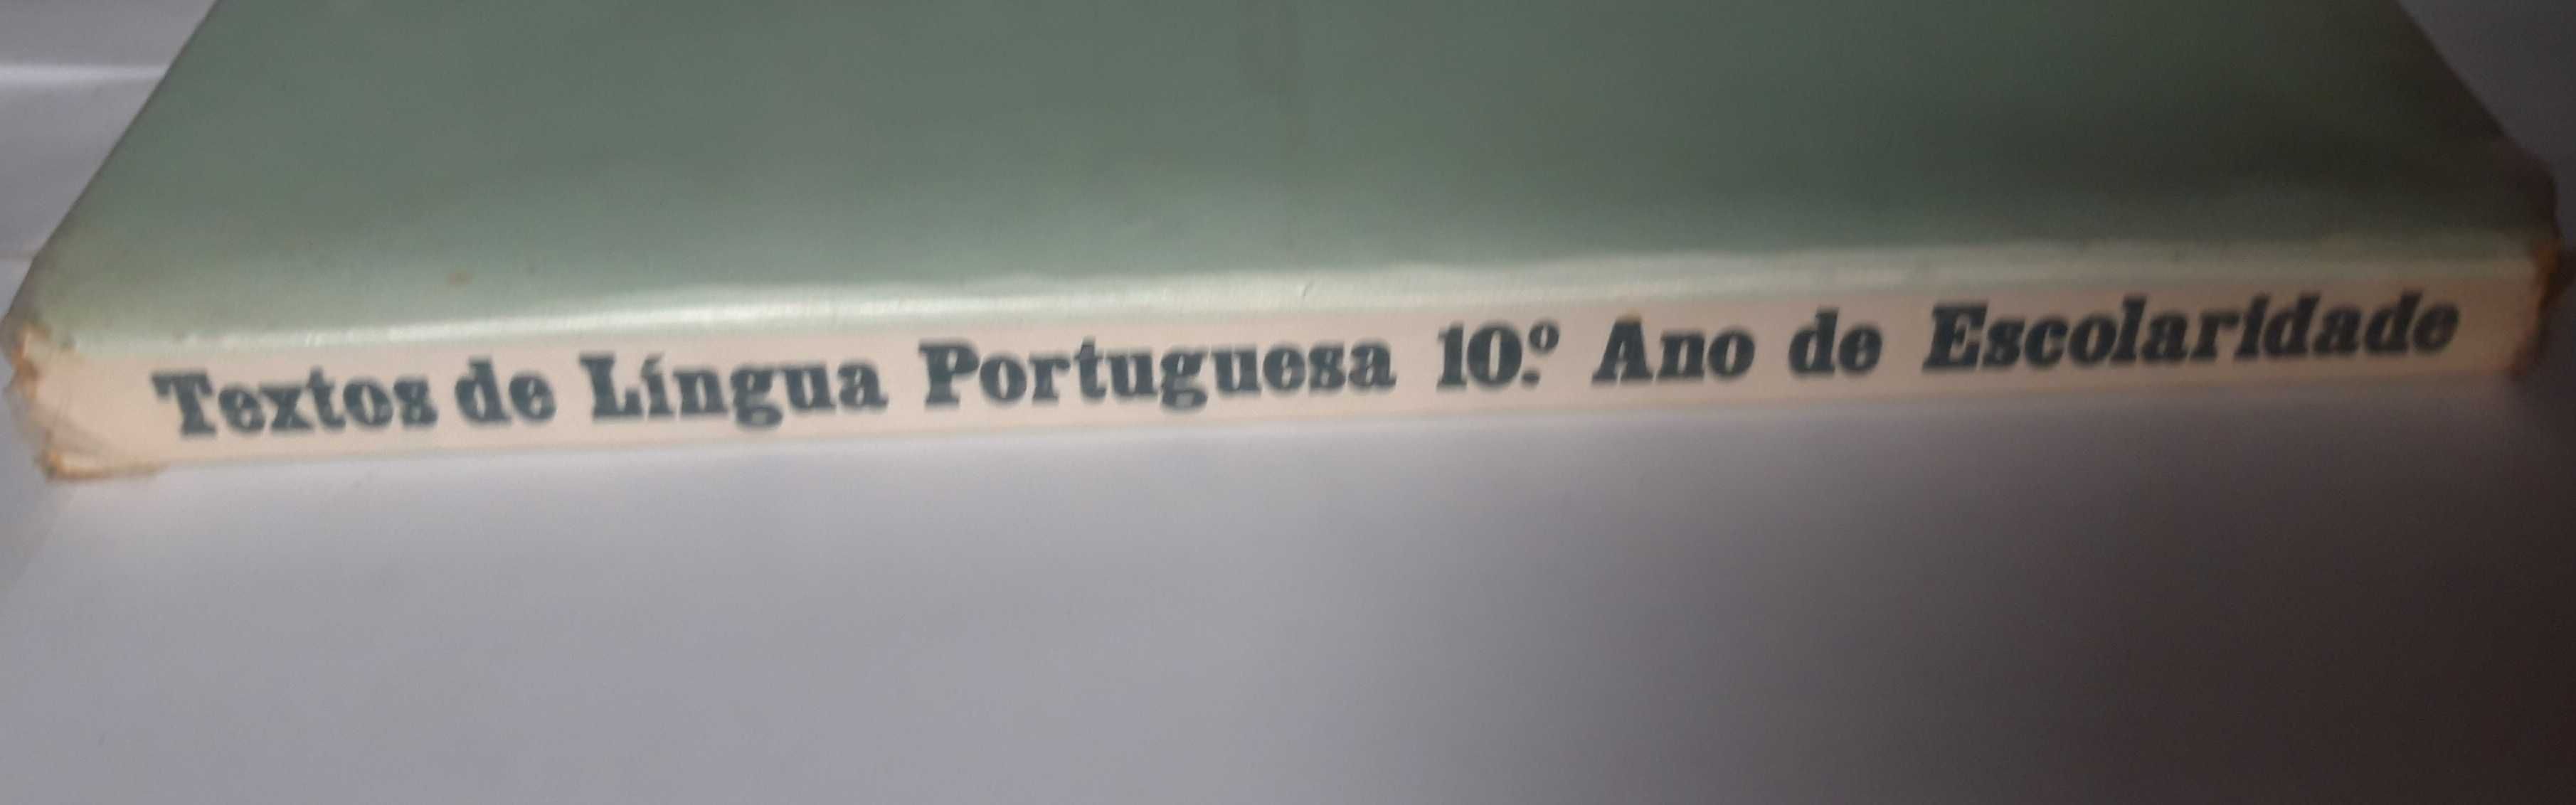 Livros- Ref CxC - Textos de Língua Portuguesa 10º Ano (Ver Anúncio)